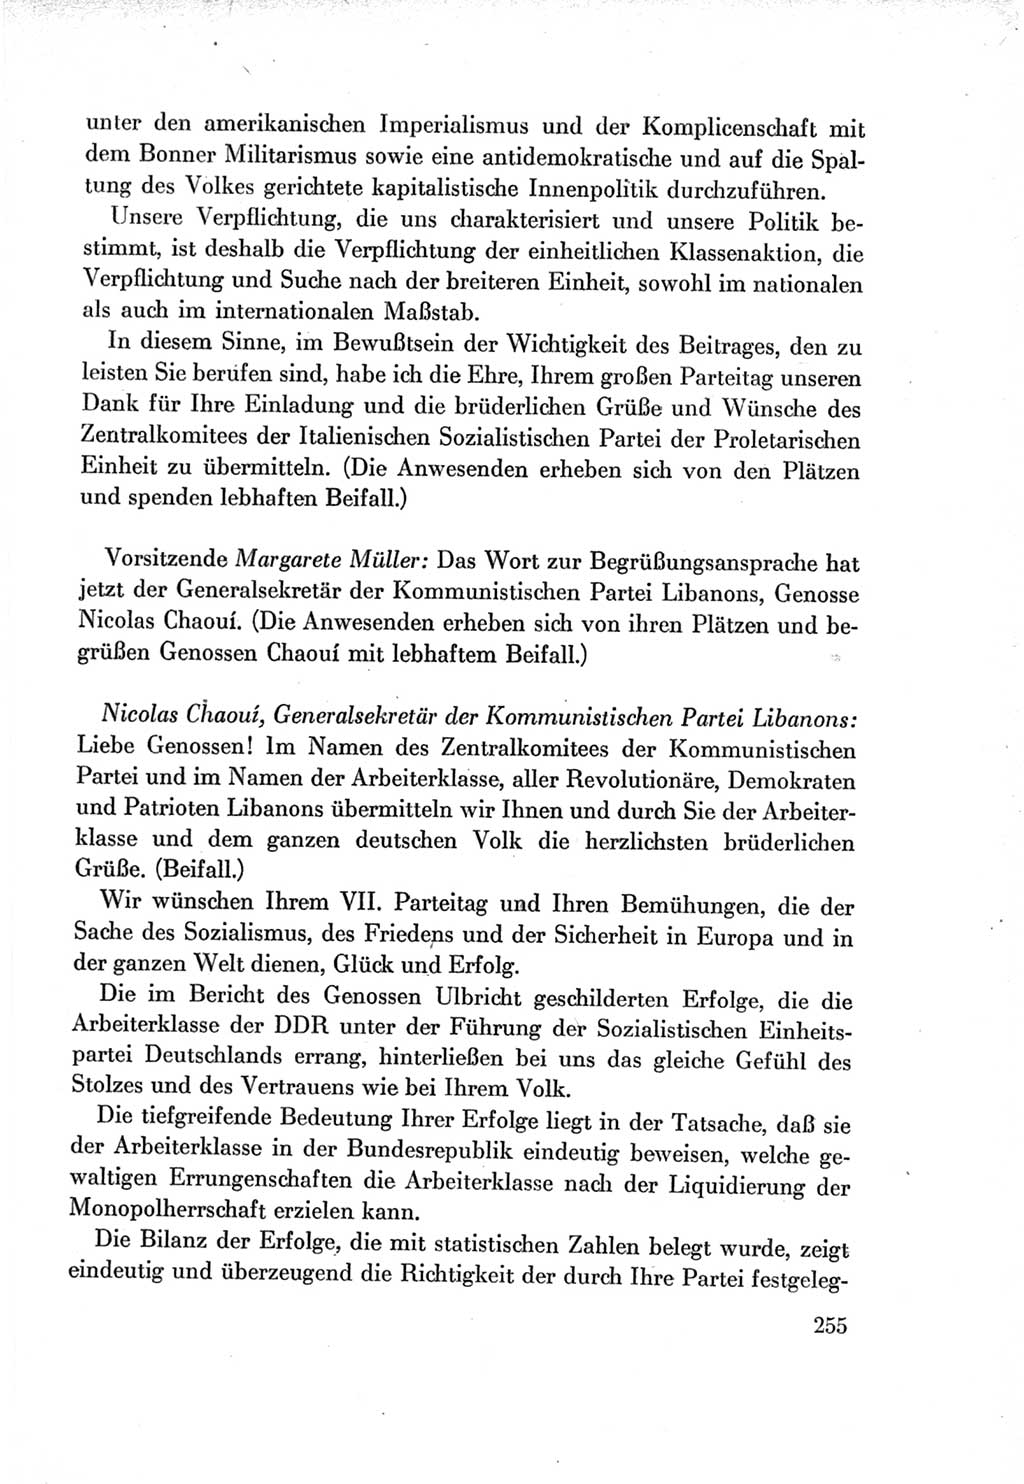 Protokoll der Verhandlungen des Ⅶ. Parteitages der Sozialistischen Einheitspartei Deutschlands (SED) [Deutsche Demokratische Republik (DDR)] 1967, Band Ⅱ, Seite 255 (Prot. Verh. Ⅶ. PT SED DDR 1967, Bd. Ⅱ, S. 255)